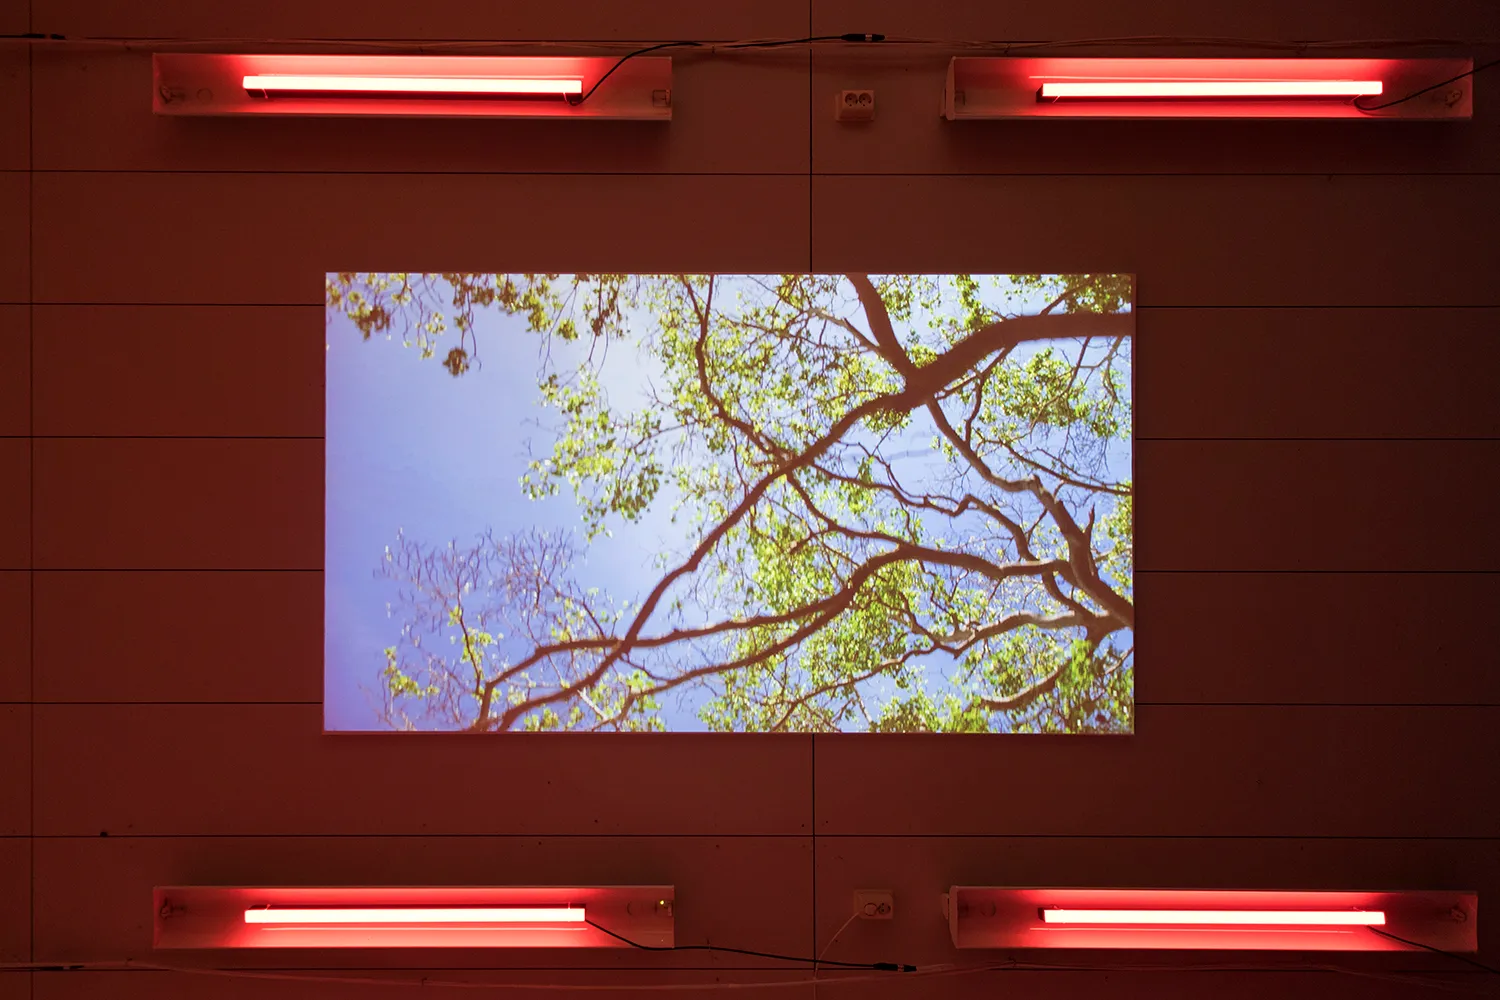 De projectie van een beeld van een bladerdak op een plafond, met 4 rode neonlichtbuizen rondom